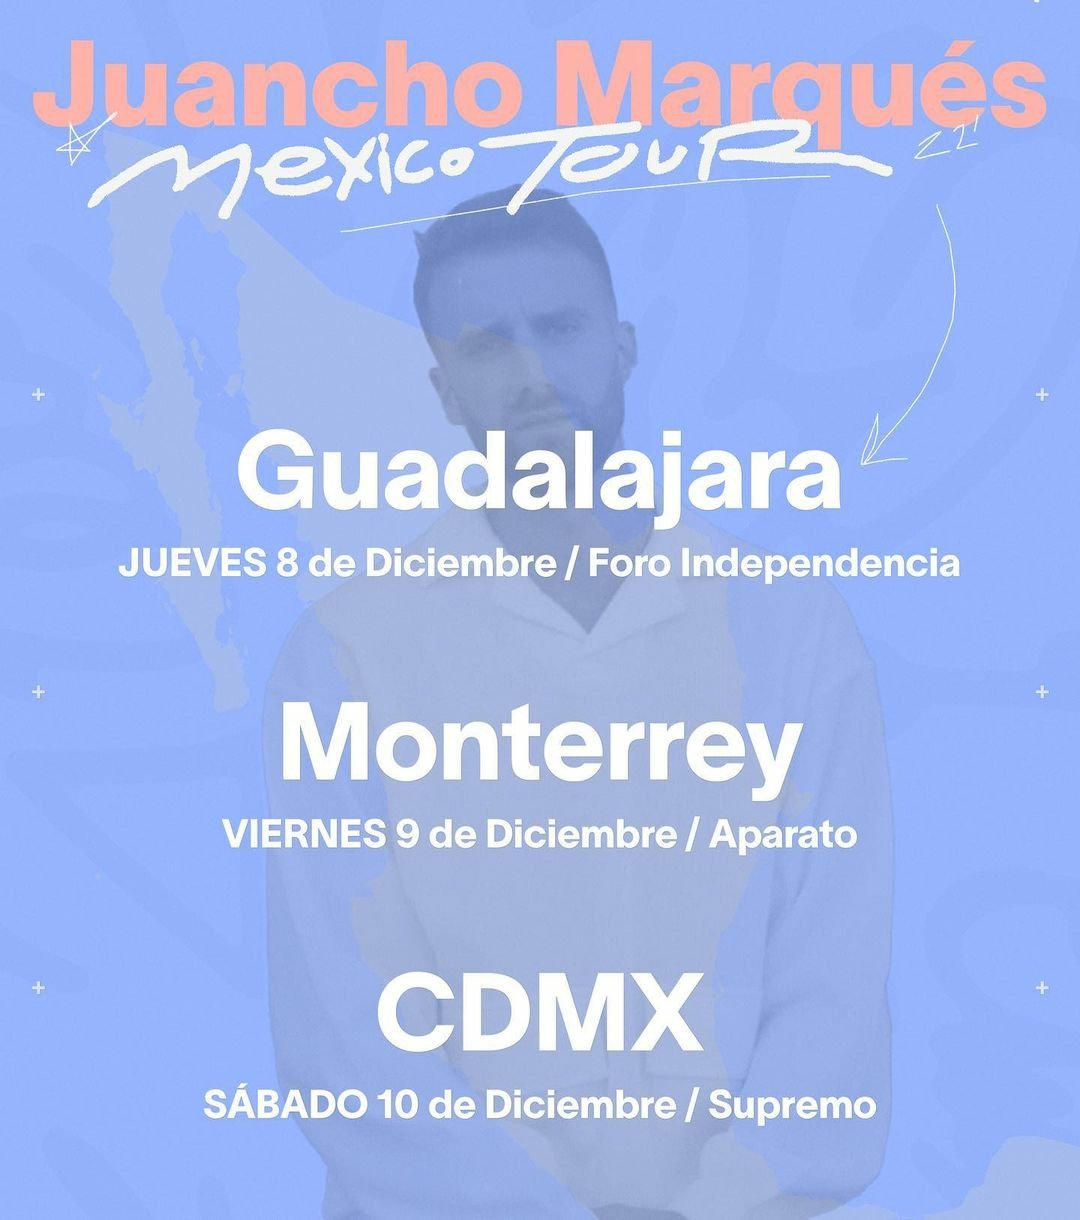 Juancho Marqués llega por primera vez a México2